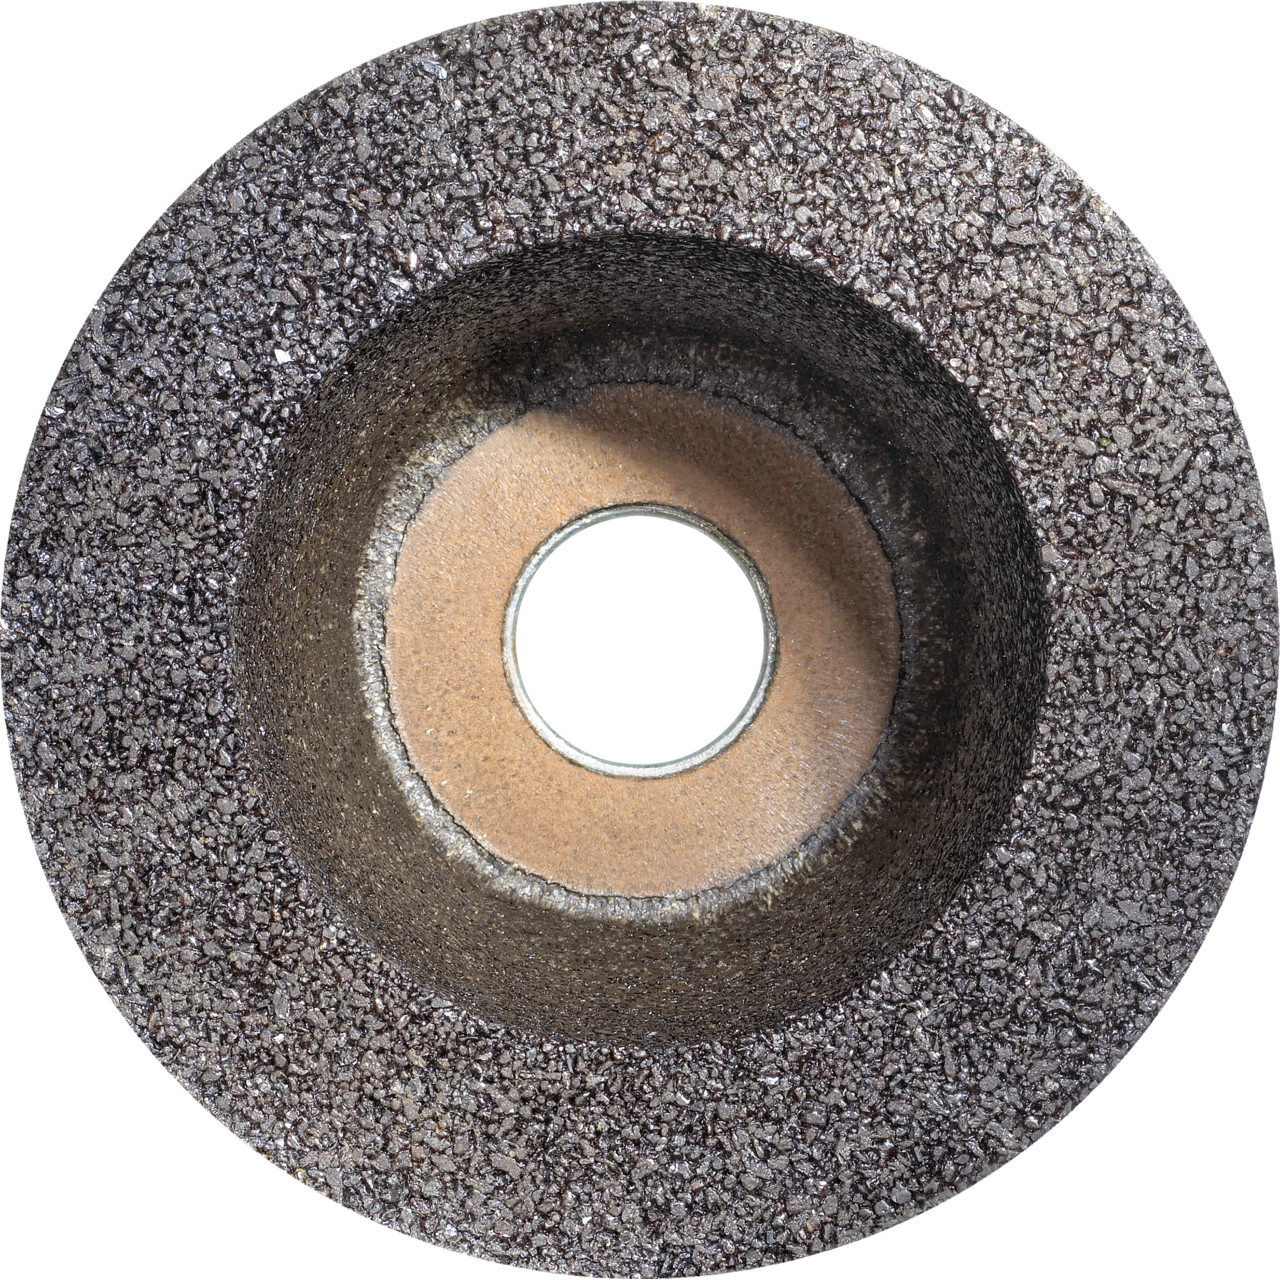 Tazza in resina sintetica TYROLIT D/JxDxH 110/90x55x22,23 Per acciaio, forma: 11BT (ruota a tazza), Art. 310183